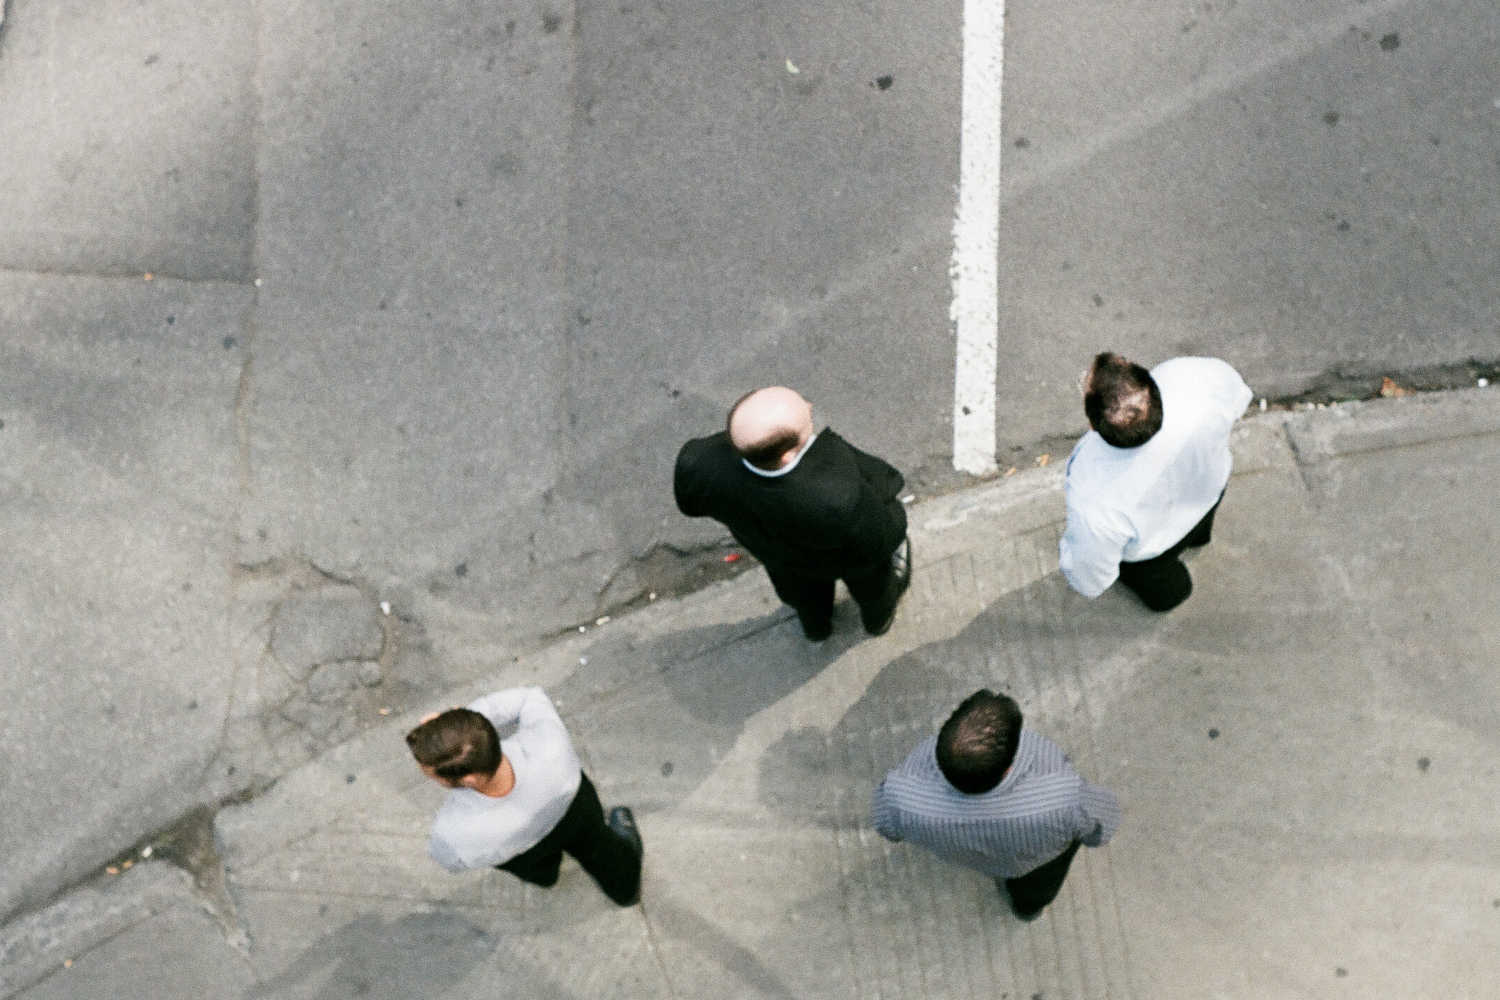 Four pedestrians waiting for a green light